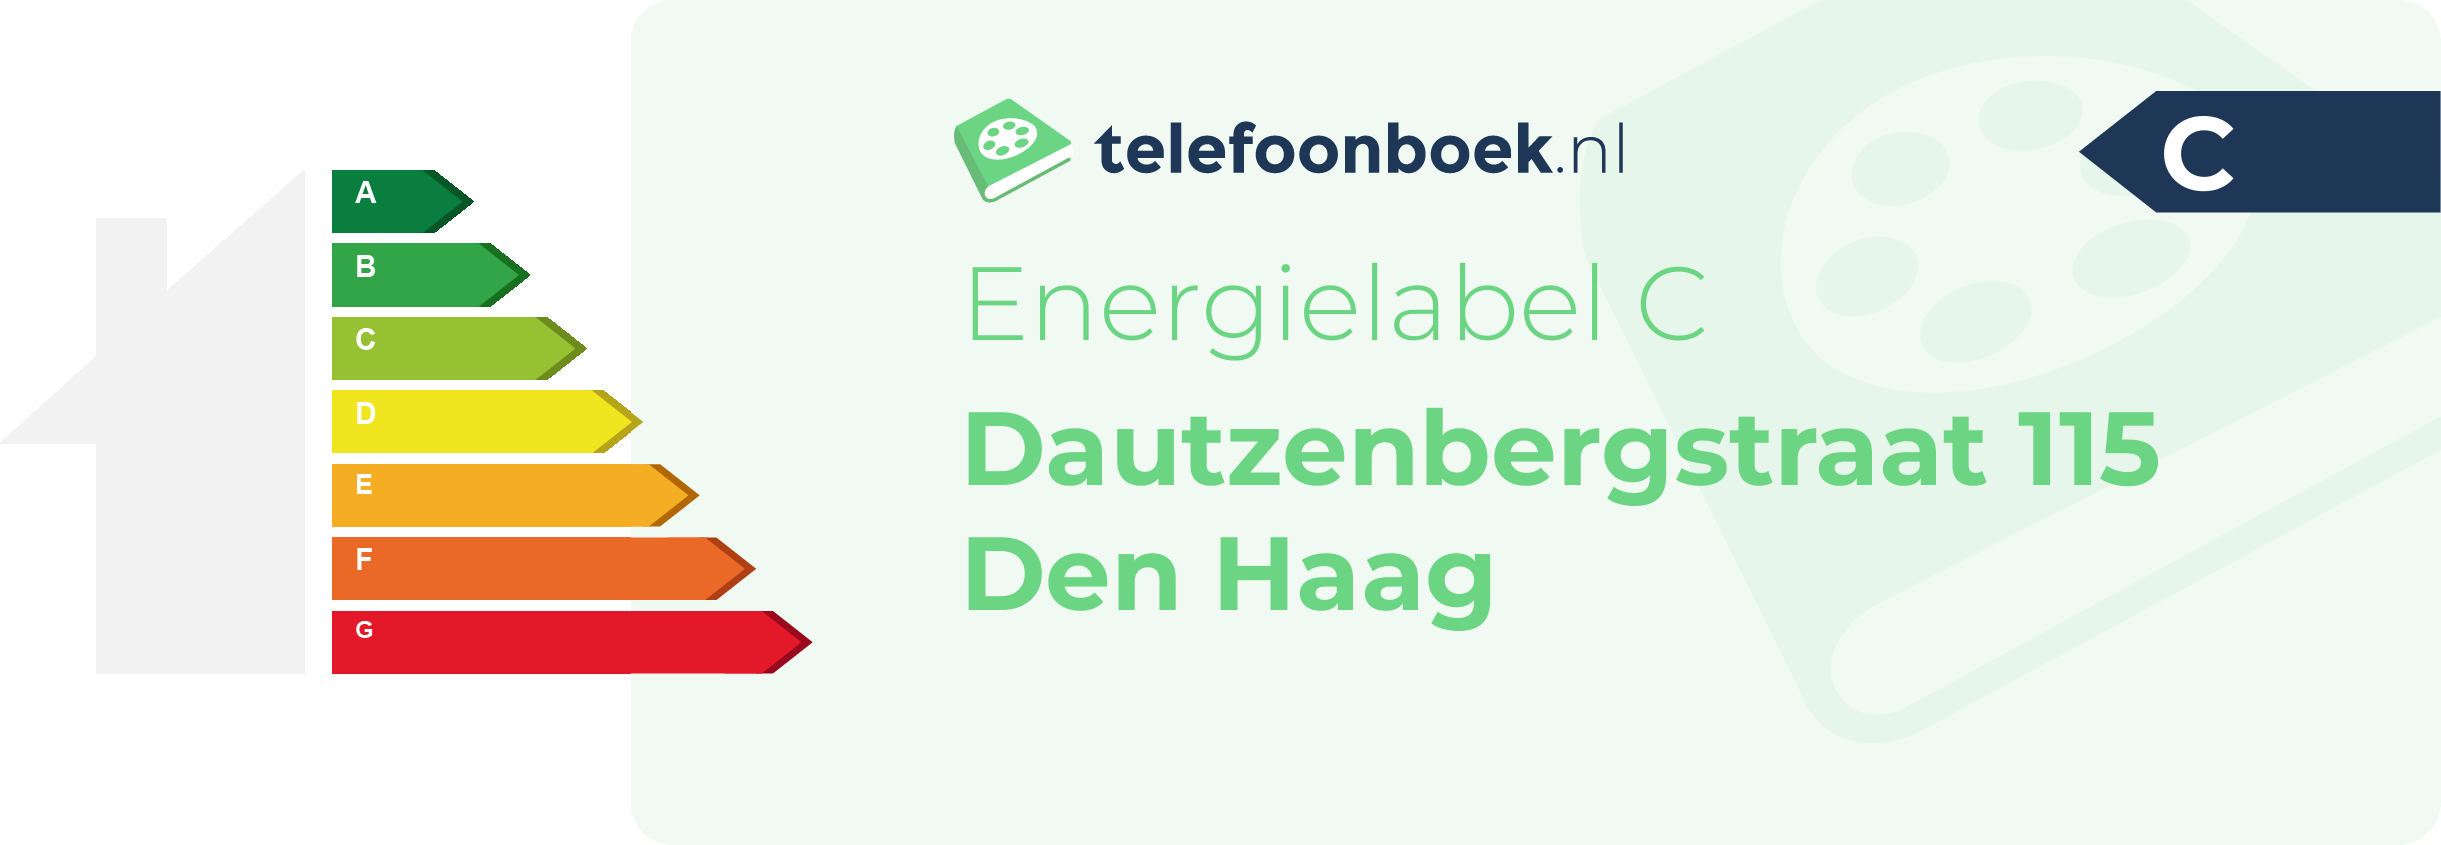 Energielabel Dautzenbergstraat 115 Den Haag